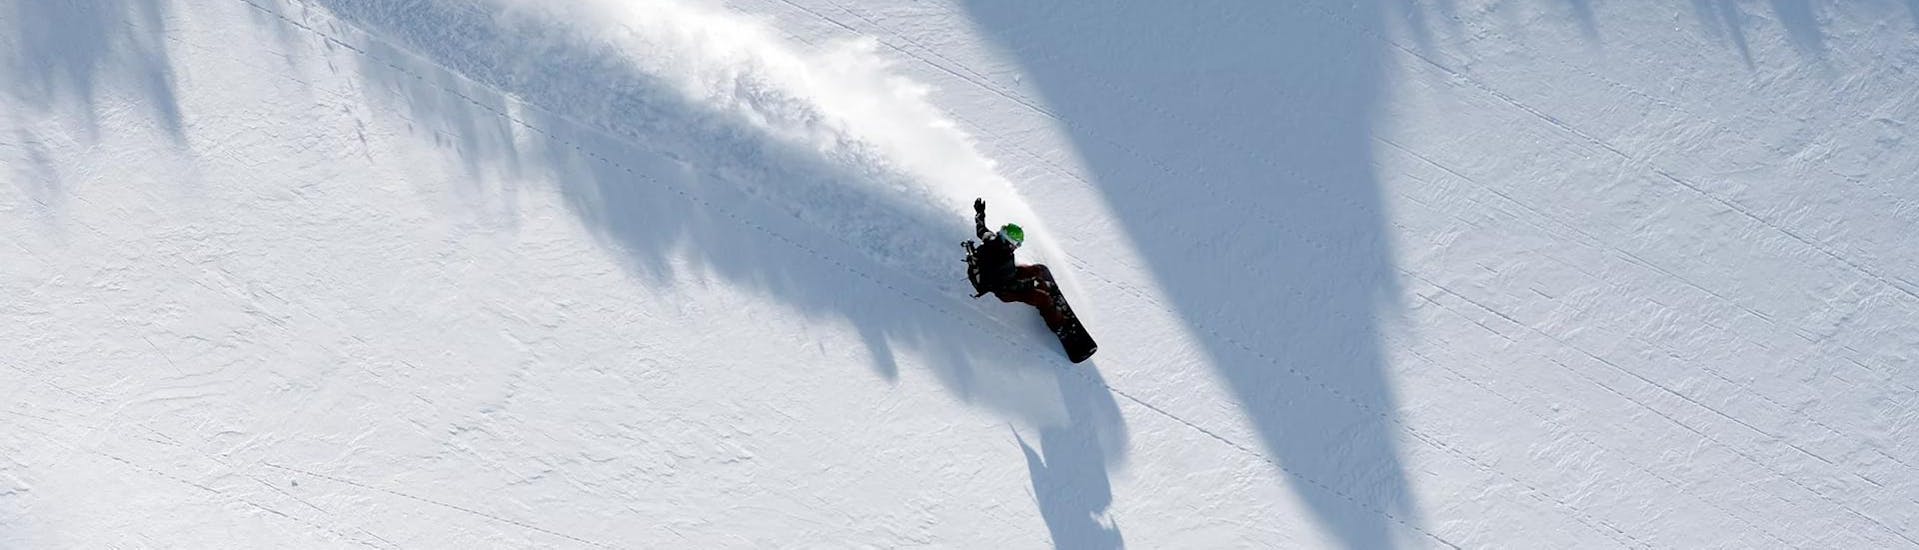 Un snowboarder practica nuevas técnicas en las pistas durante las lecciones privadas de snowboard para niños y adultos de todos los niveles con Skischule Tannberg Lech.